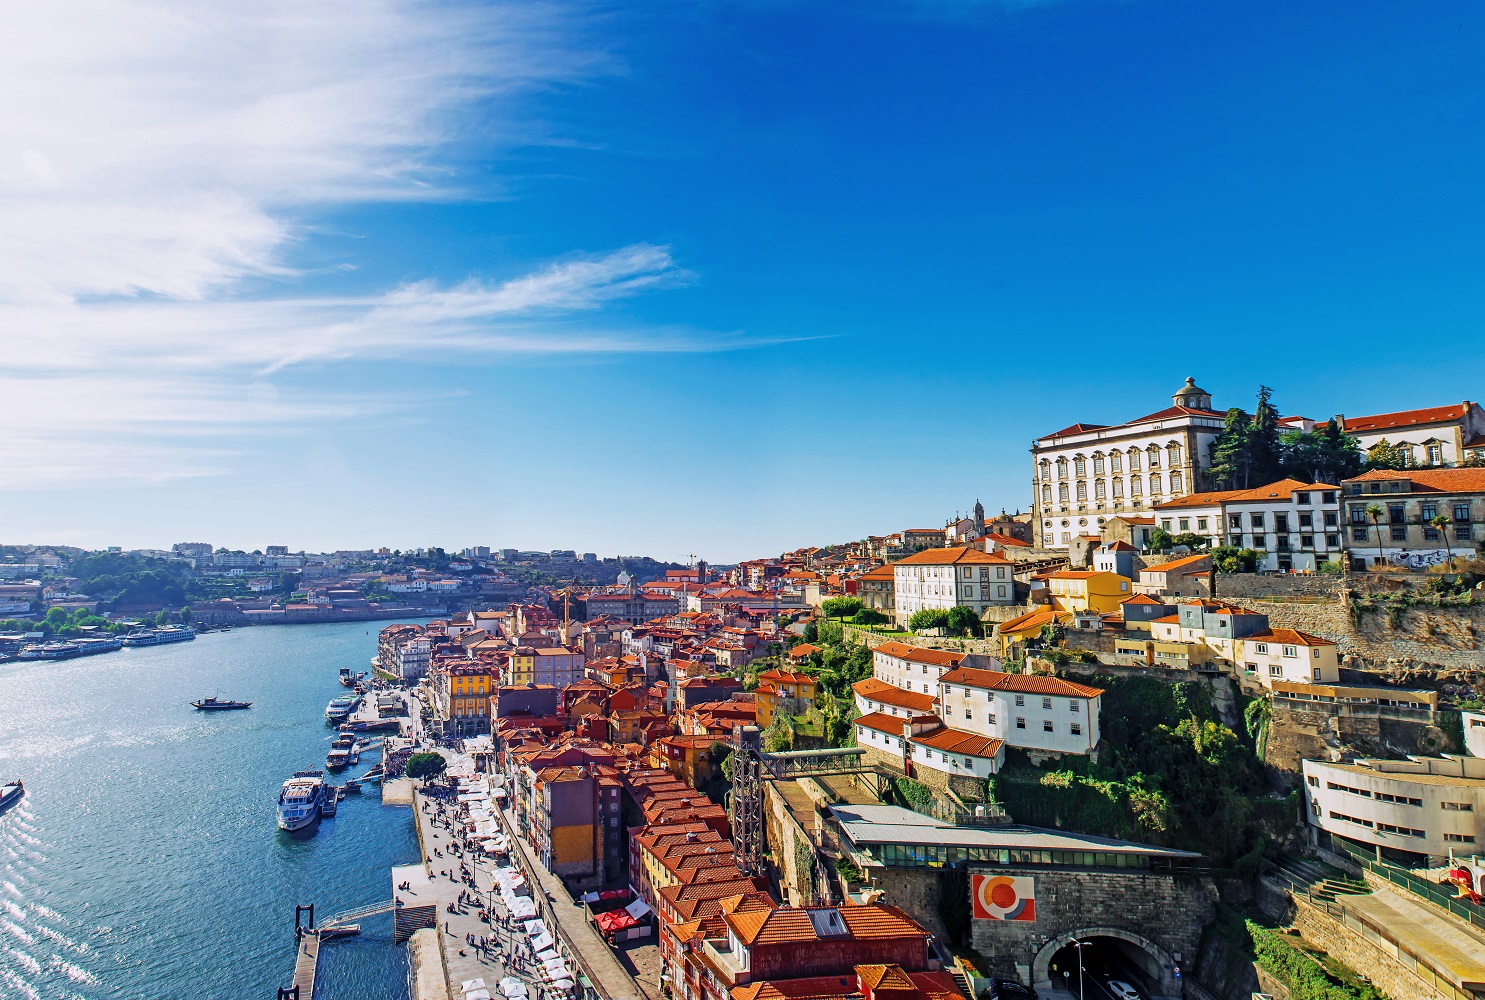 /pt/noticia/post/quer-estudar-ou-morar-em-porto-saiba-detalhes-sobre-segunda-maior-cidade-de-portugal